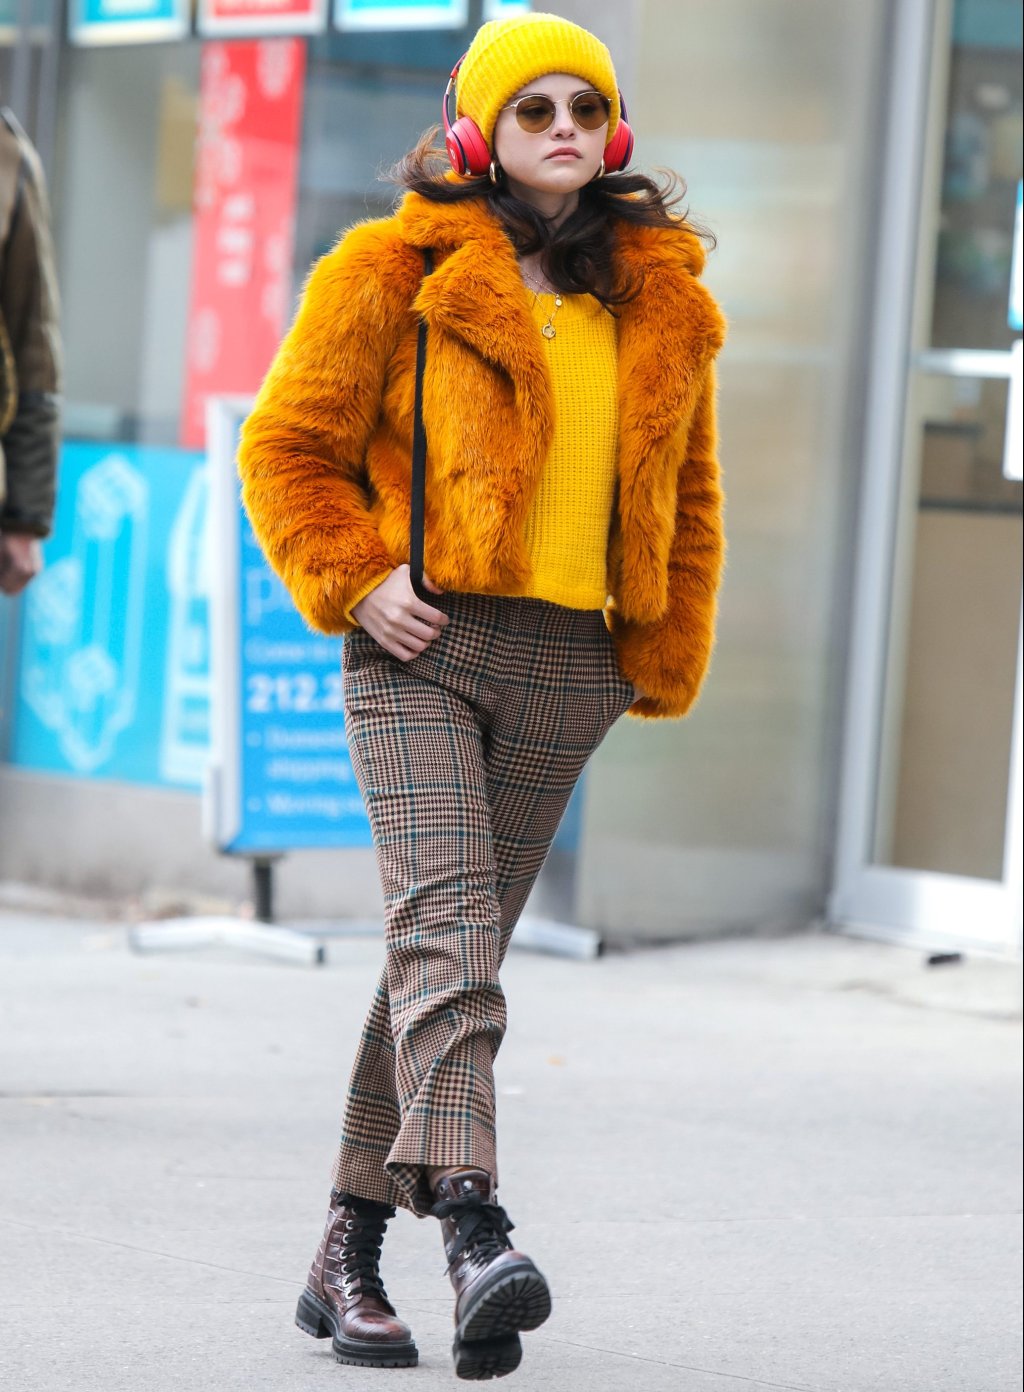 Selena Gomez andando na rua com gorro e suéter amarelos, casaco de pelos laranja, calça xadrez e coturno; ela está com a expressão séria e usa headphones vermelhos